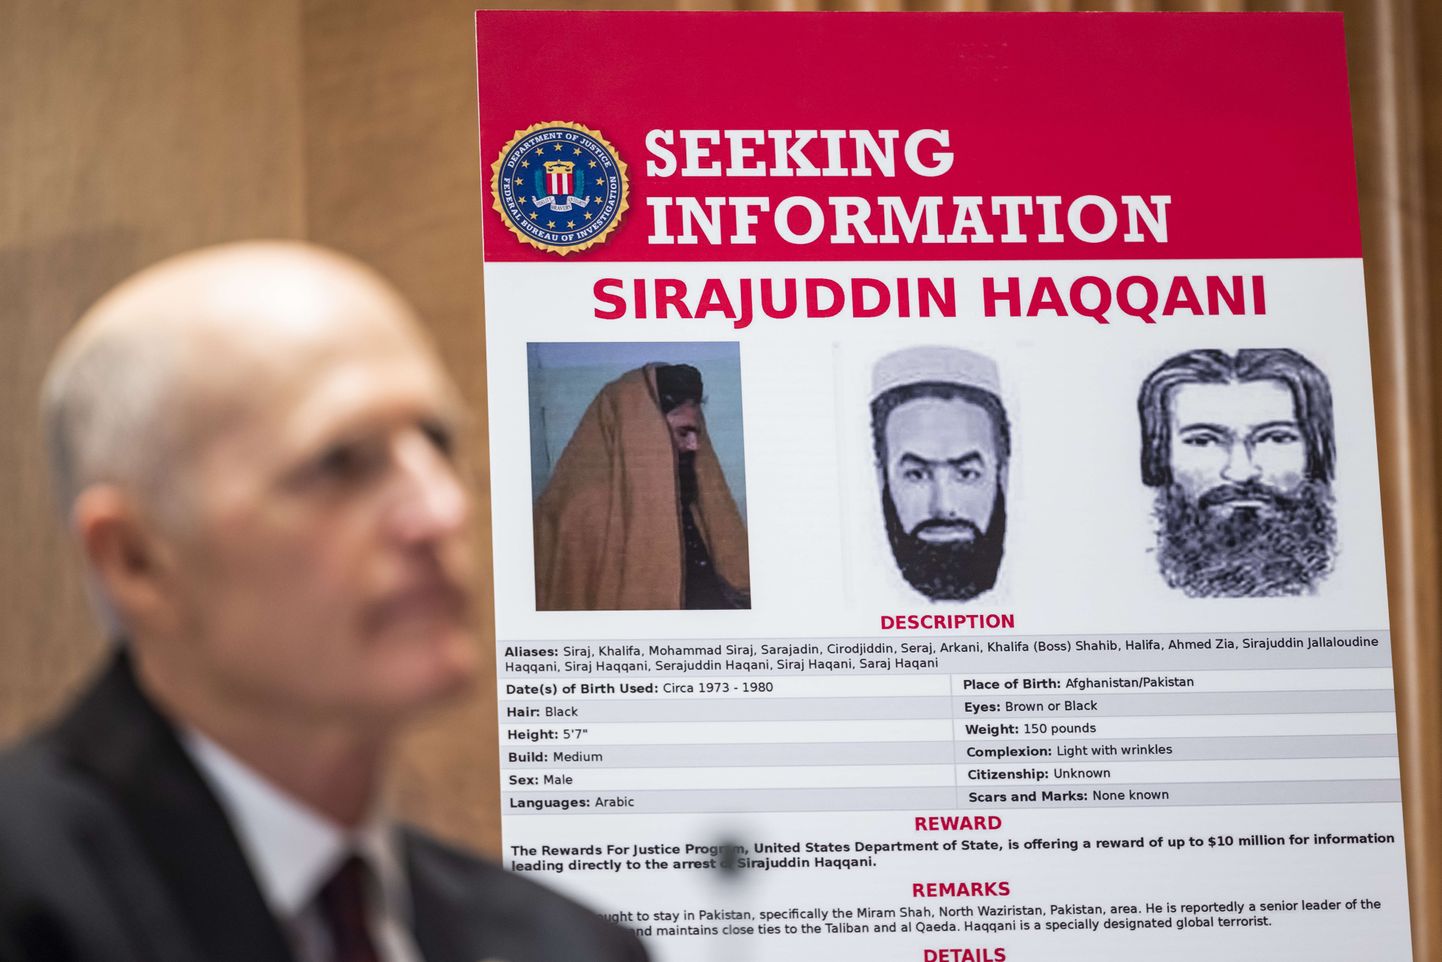 USA on Sirajuddin Haqqani tabamise eest välja pannud 10 miljoni dollari suuruse vaevatasu.